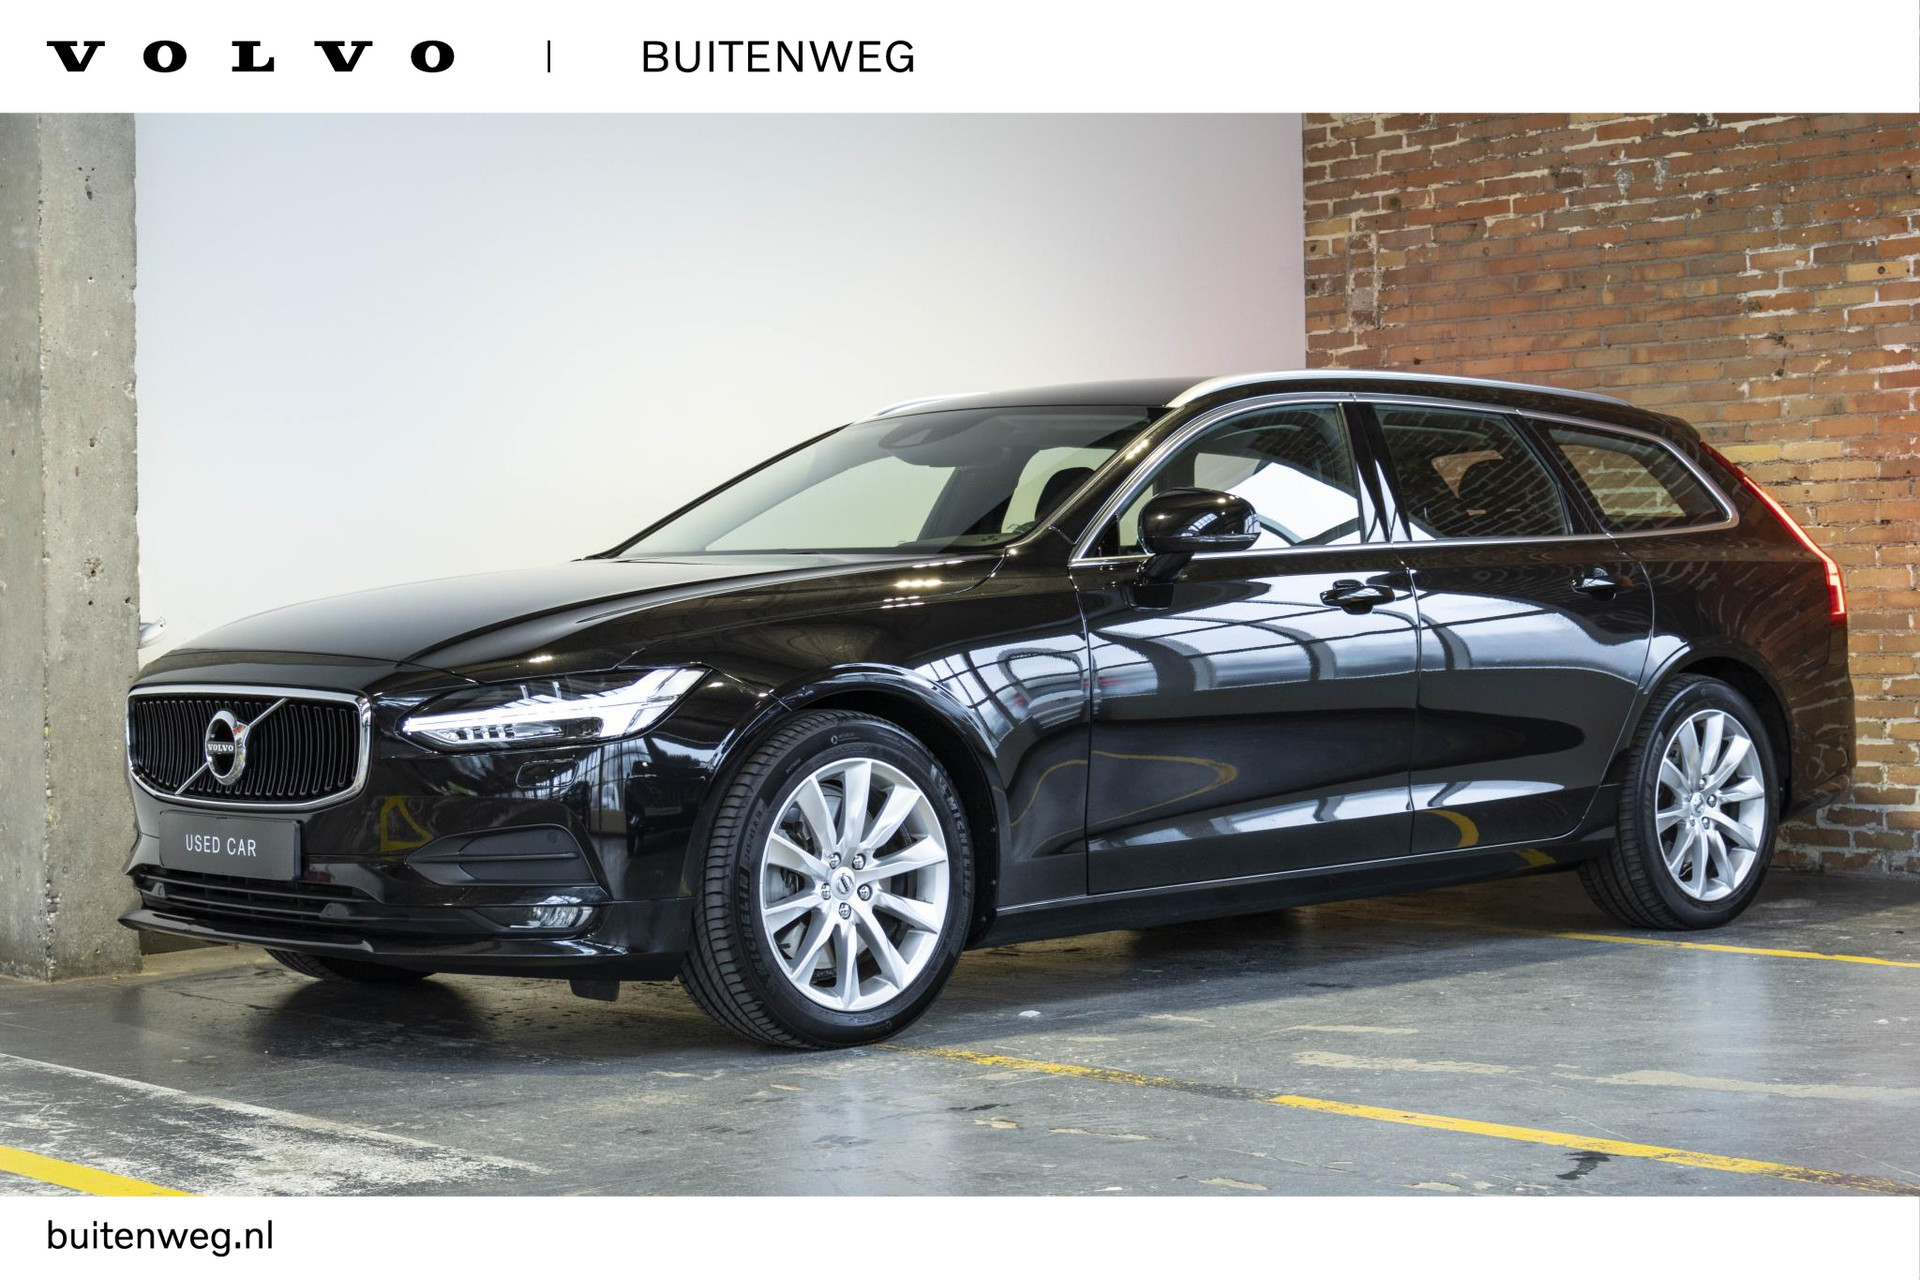 Volvo V90 T5 Automaat Momentum | Lederen bekleding | Stoelverwarming | Parkeercamera | Parkeersensoren voor + achter | Apple carplay/ Android auto | elektrisch bedienbare achterklep | BLIS | bij viaBOVAG.nl